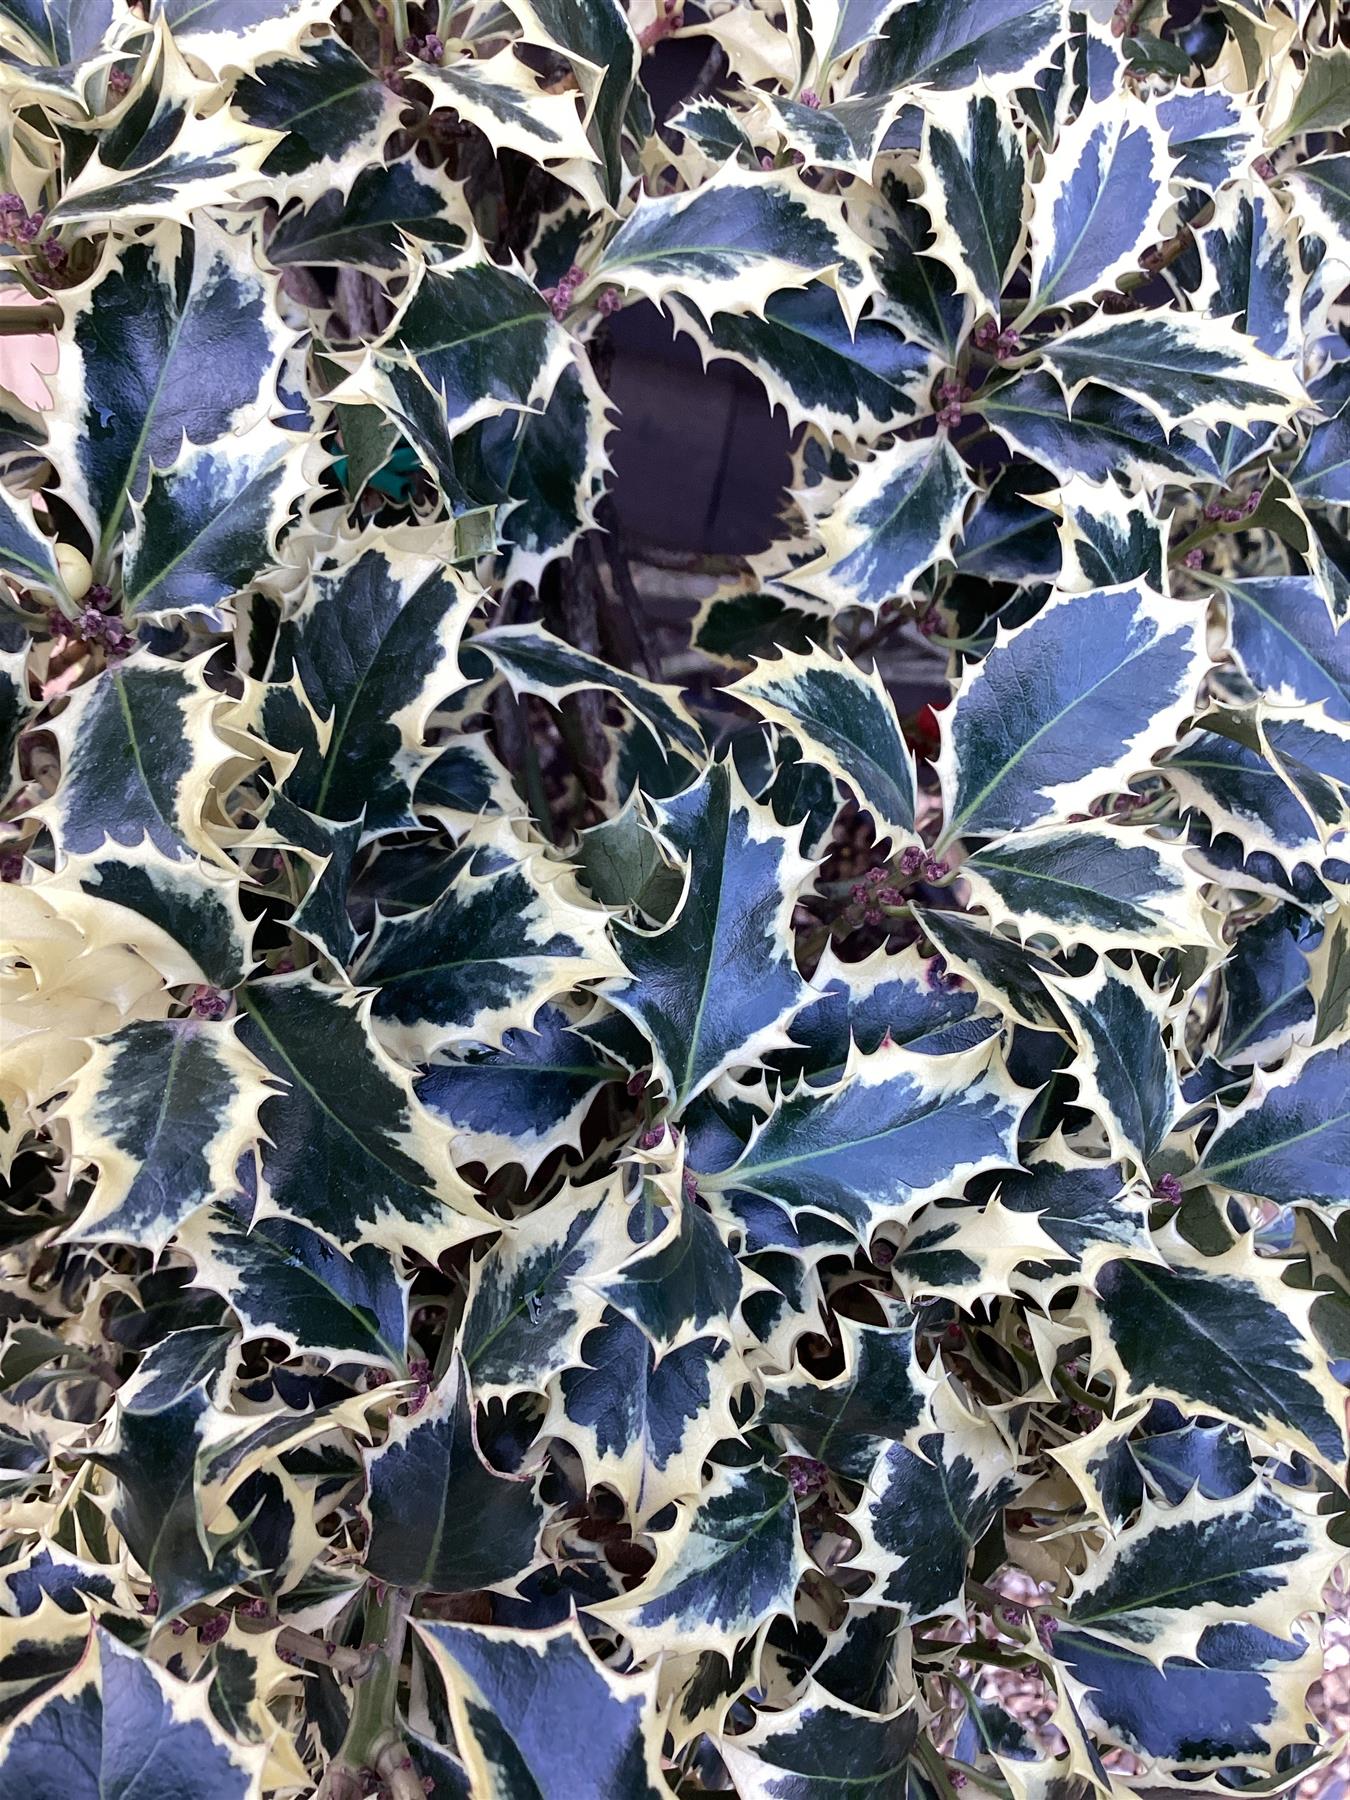 Ilex aquifolium 'Argentea Marginata' | Silver-Margined Holly - PonPon - 260-270cm, 130lt